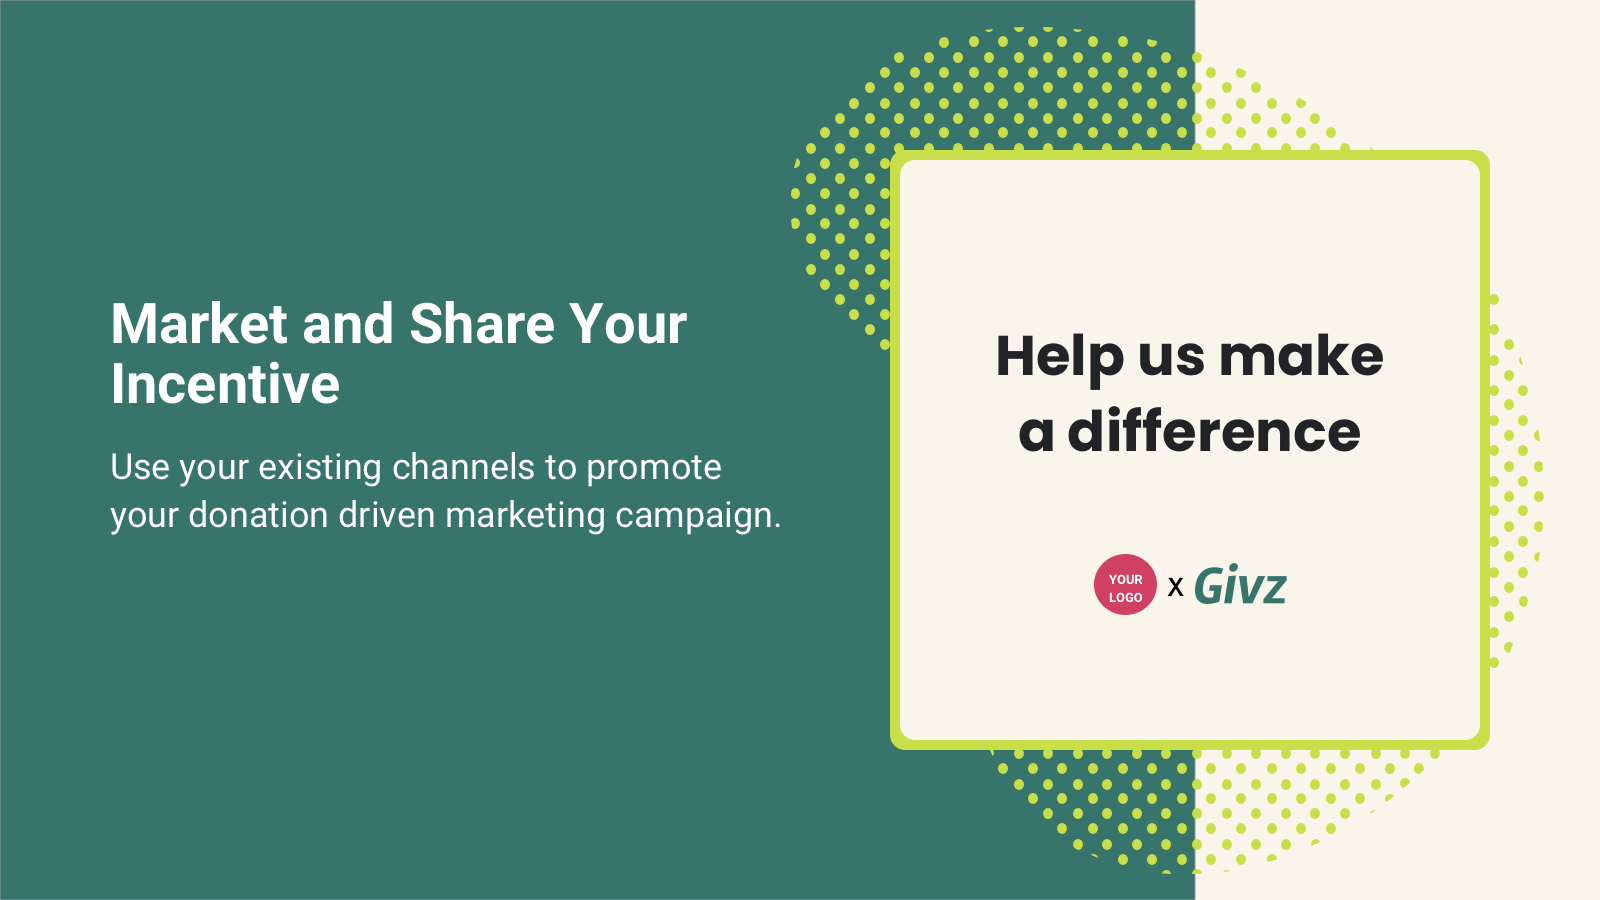 在您的品牌渠道上推广捐款营销活动